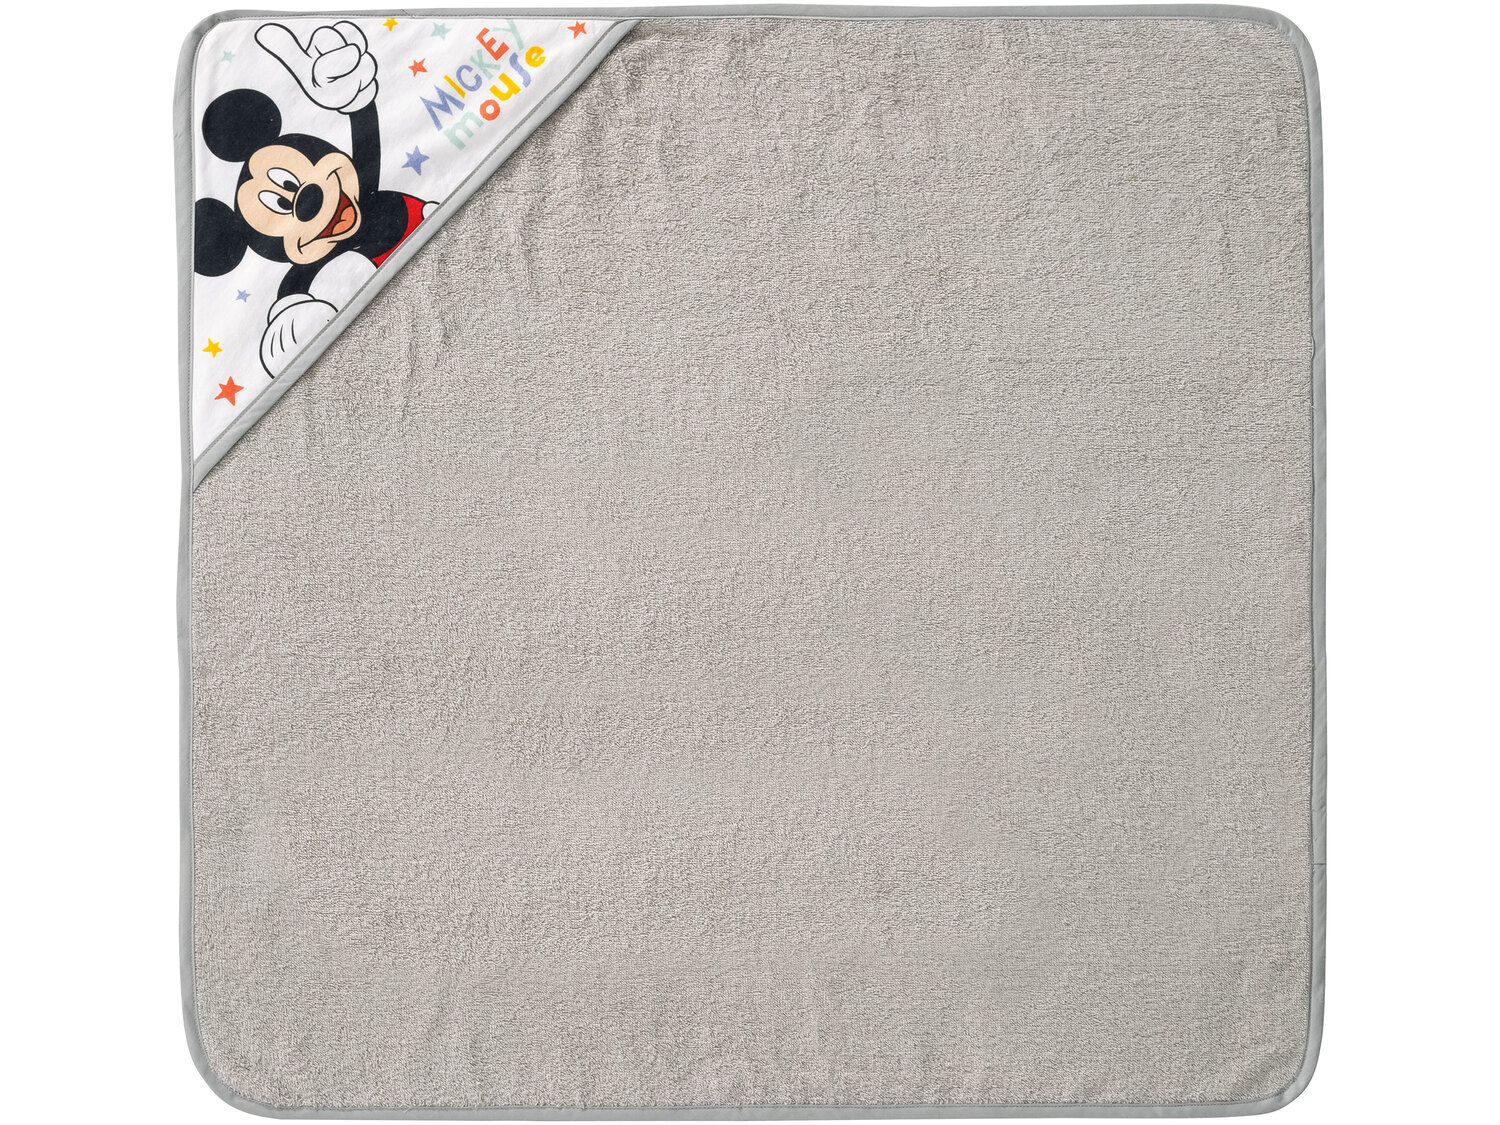 Ręcznik niemowlęcy z kapturkiem Disney, cena 34,99 PLN 
5 wzorów 
- wymiary: ...